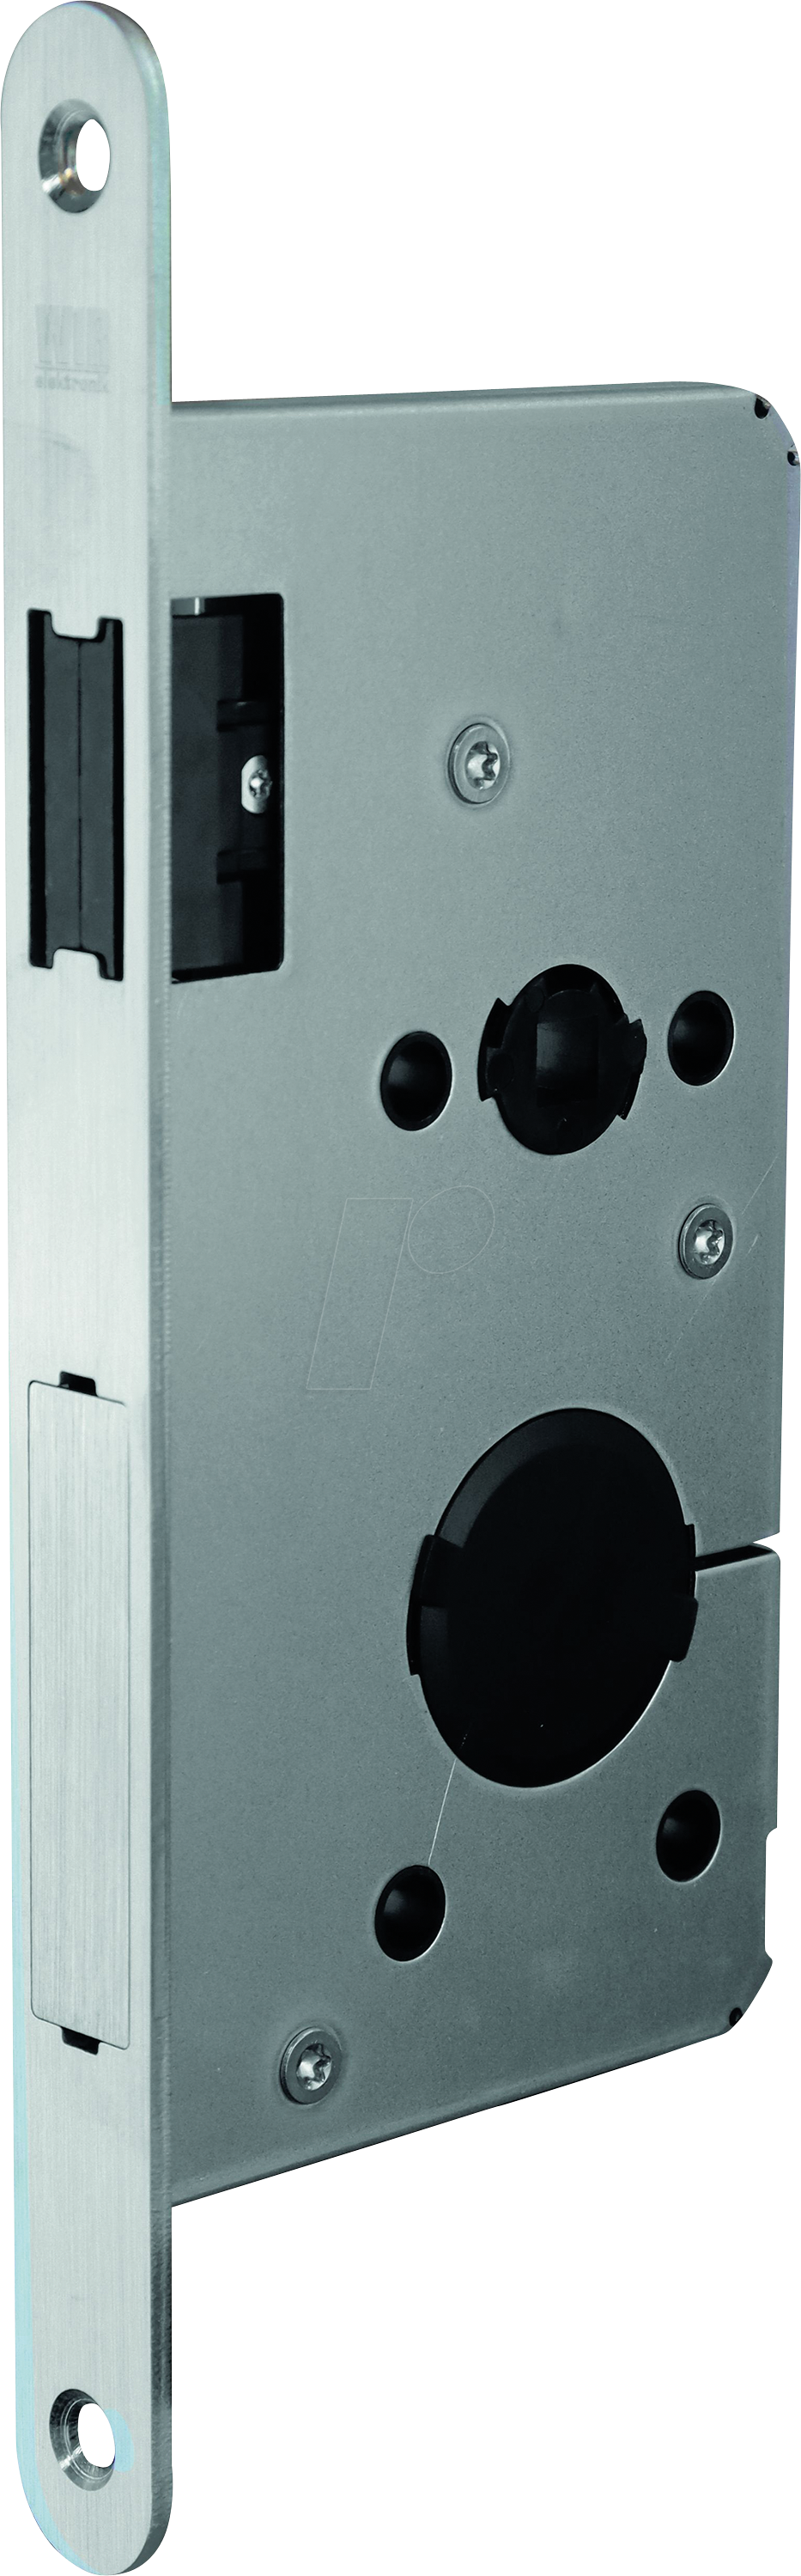 WIR 1002-000026 - Elektronisches Türschloss, Magnetfalle, Panikseite rechts von WIR ELEKTRONIK